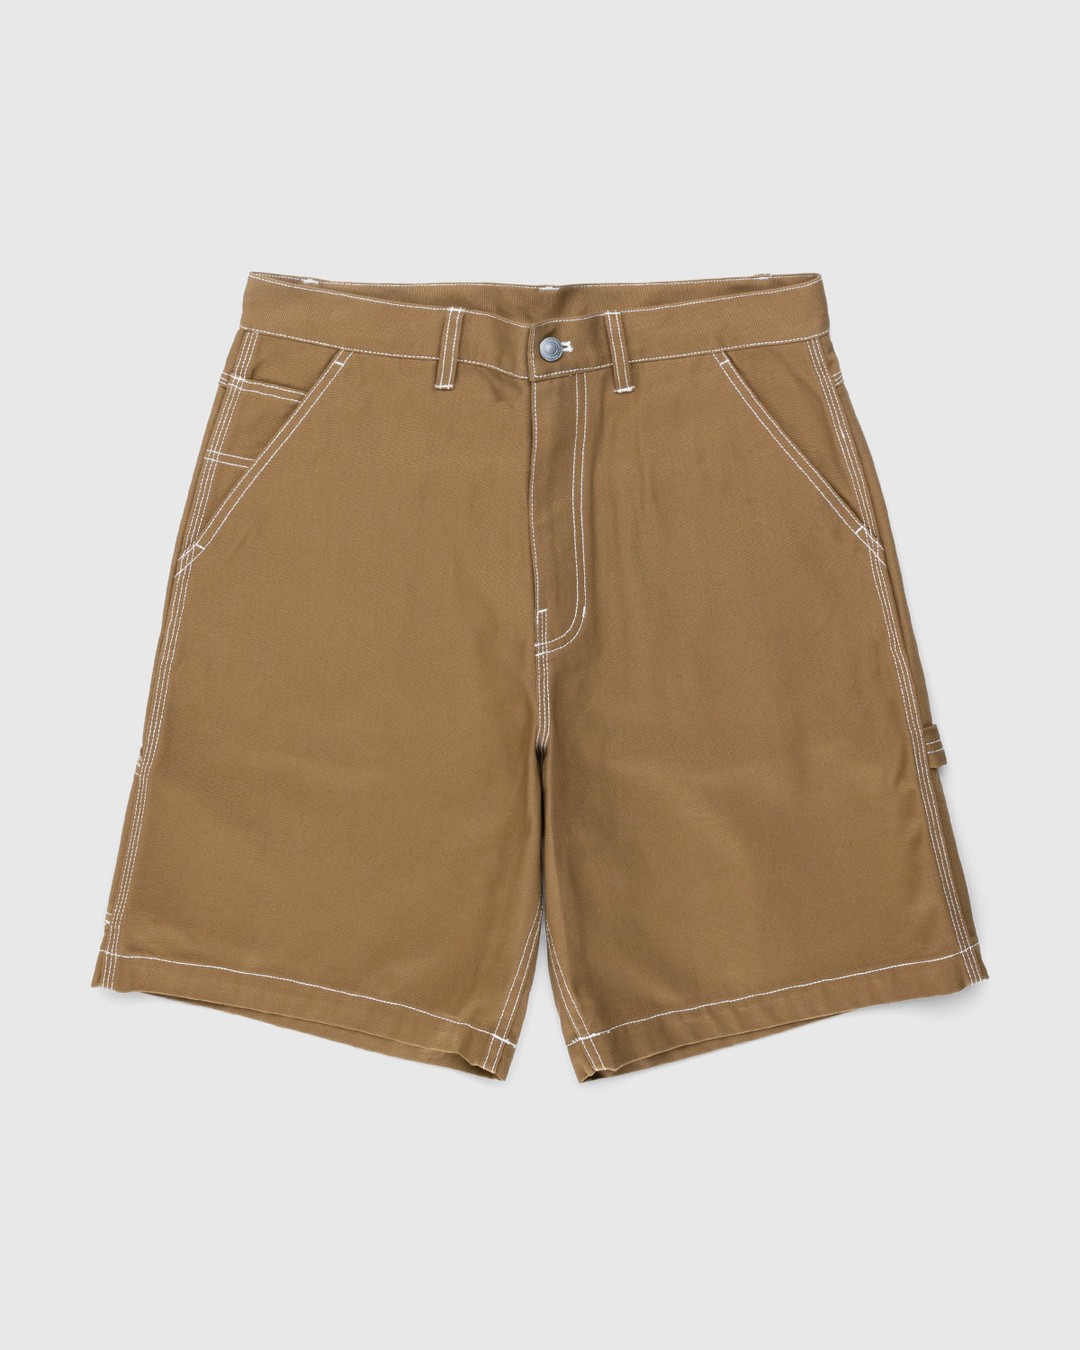 Highsnobiety – Carpenter Shorts Dark Beige - Shorts - Brown - Image 1